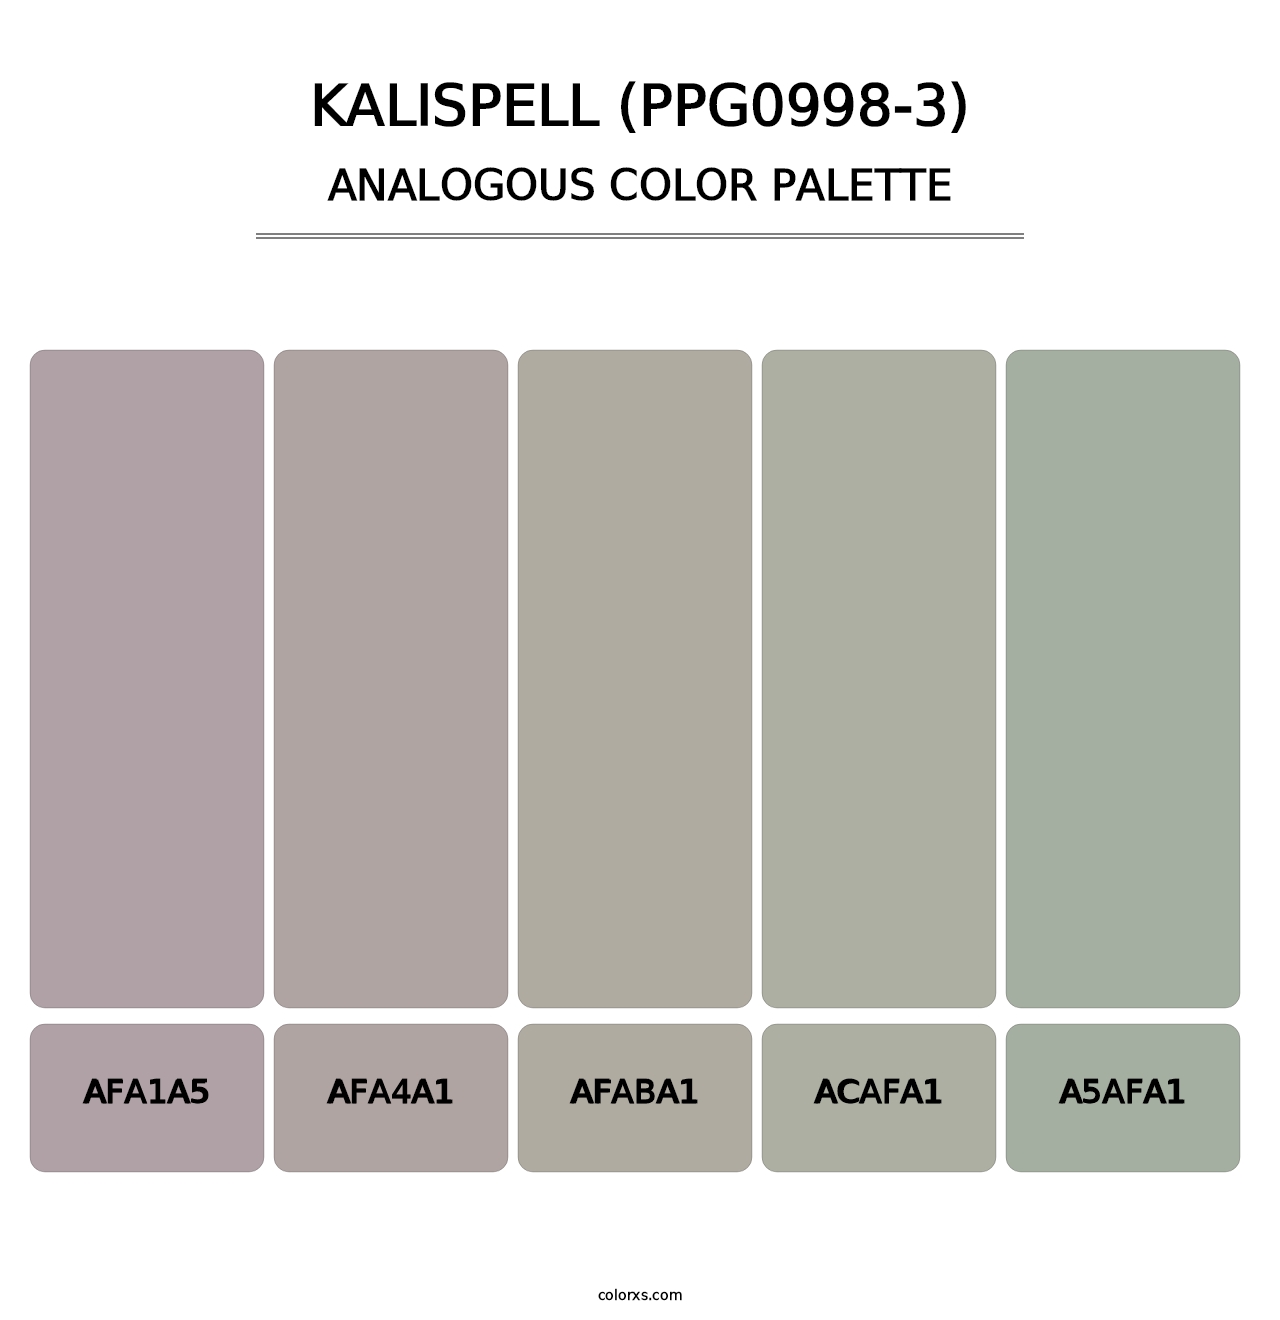 Kalispell (PPG0998-3) - Analogous Color Palette